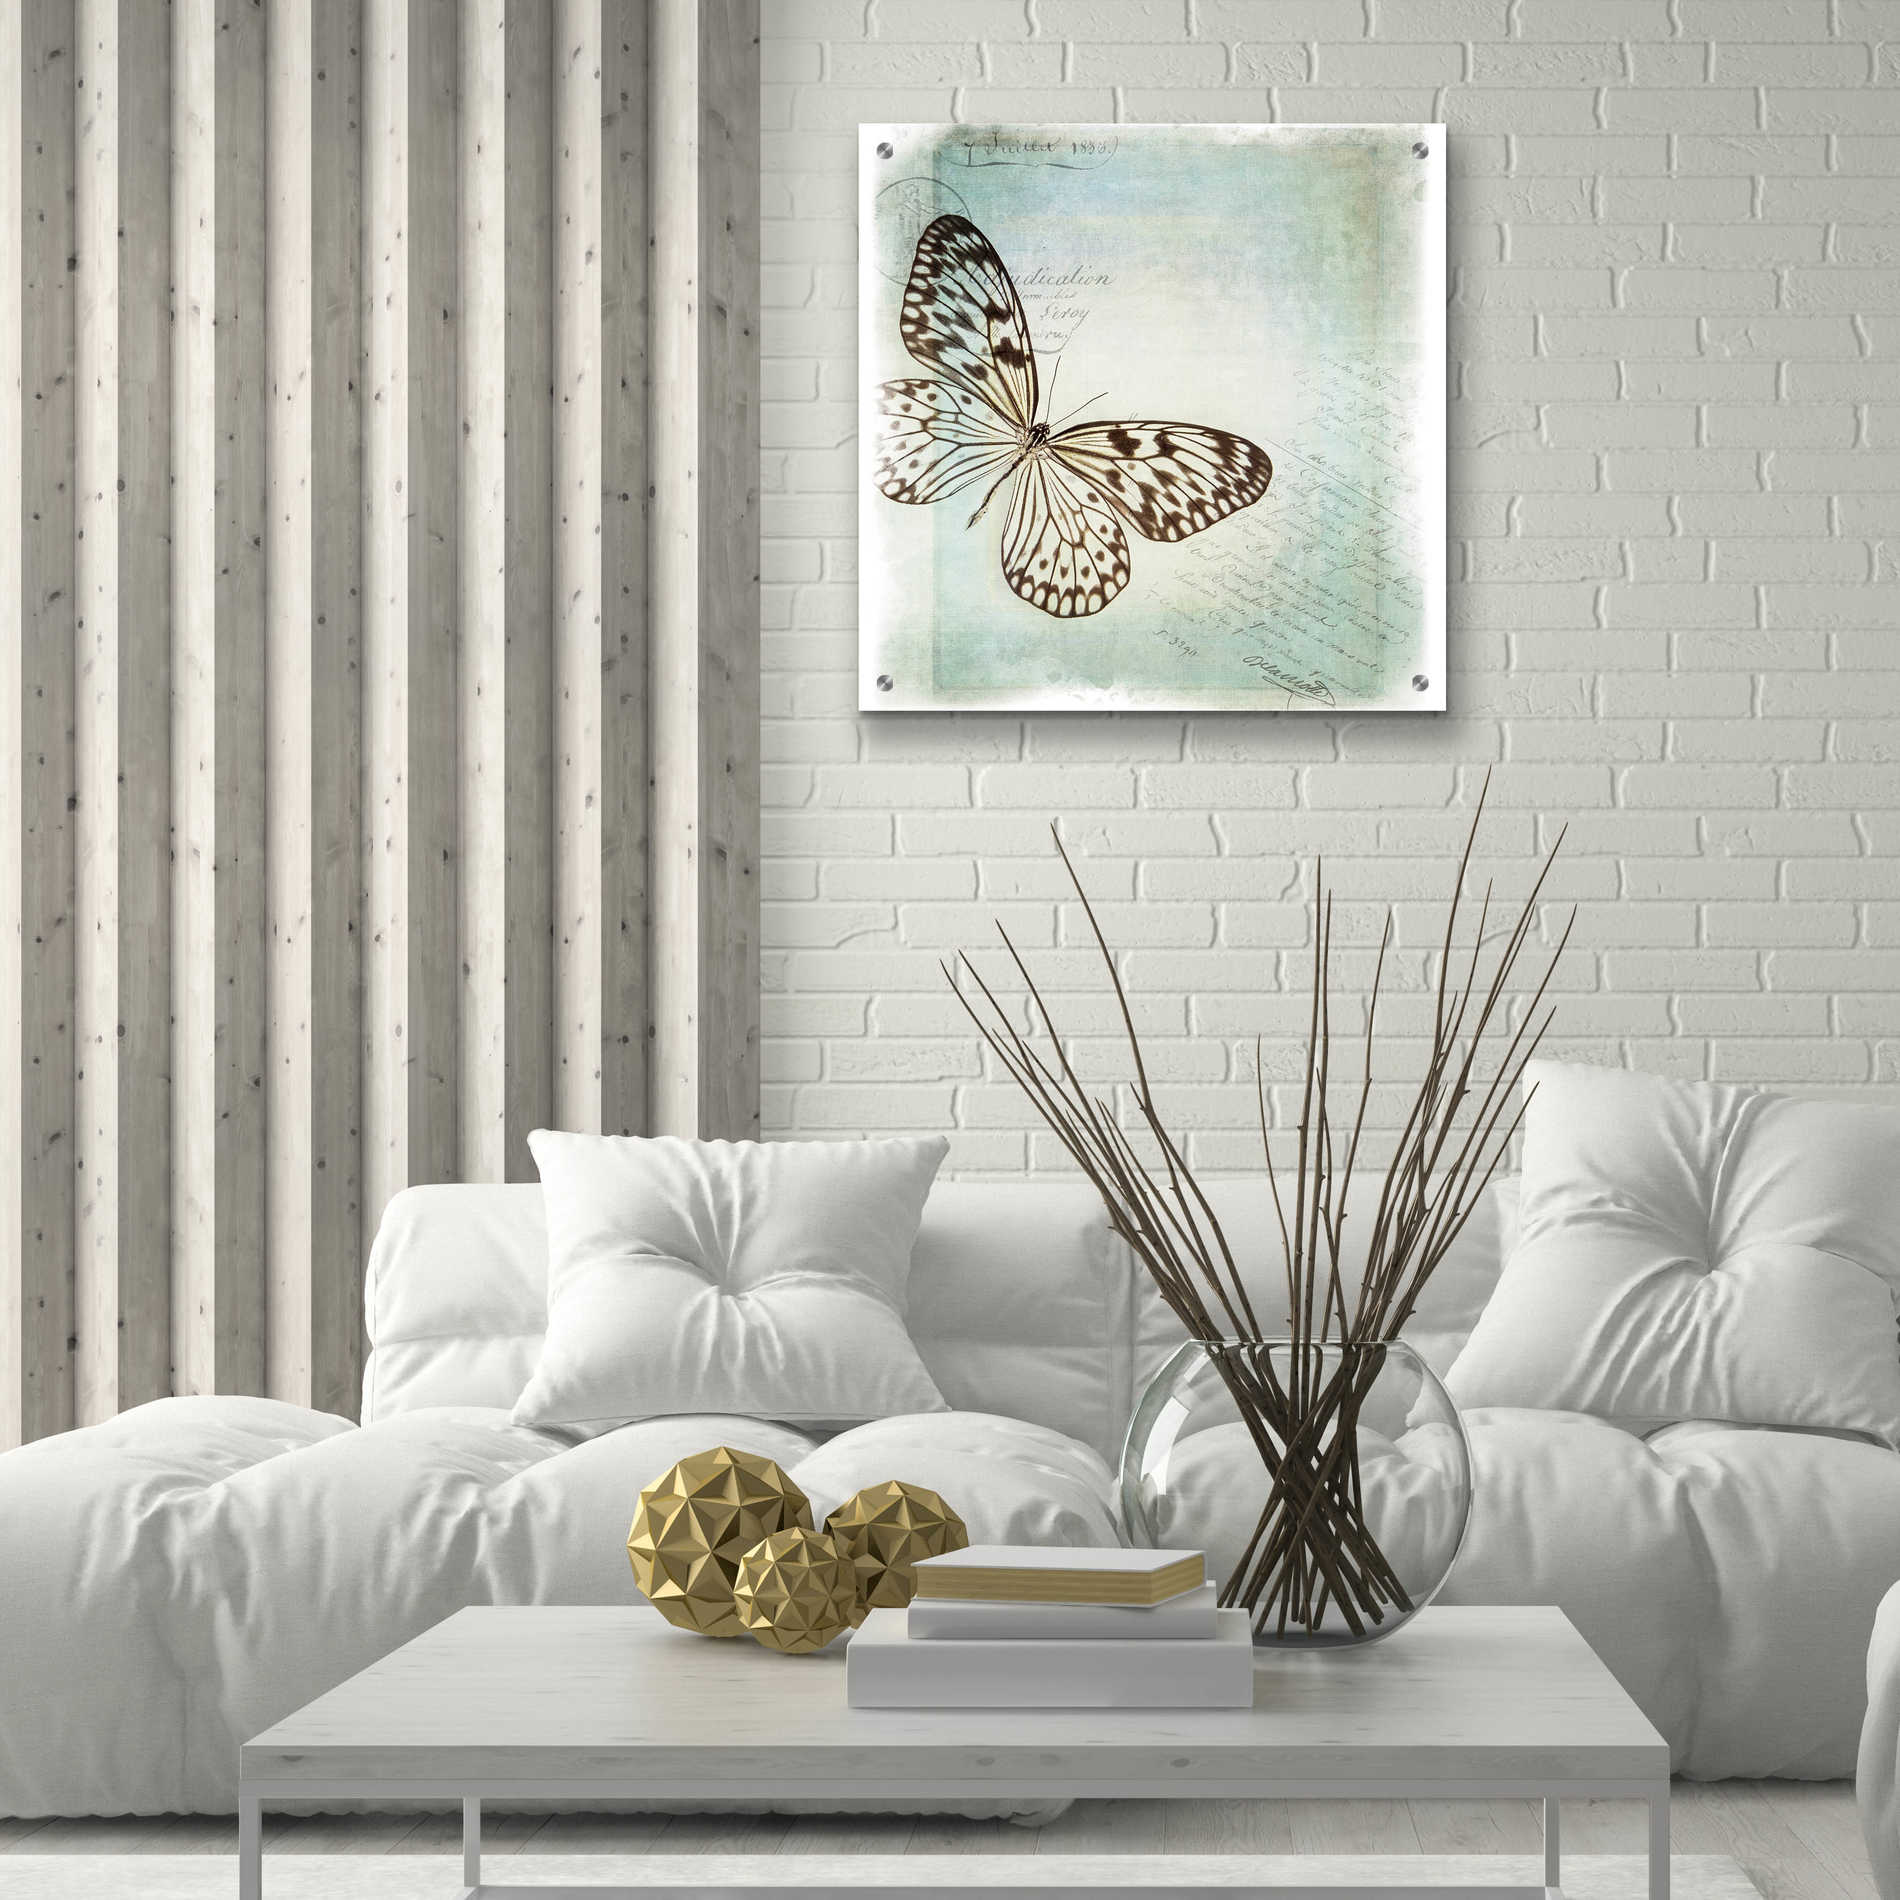 Epic Art 'Floating Butterfly IV' by Debra Van Swearingen, Acrylic Glass Wall Art,24x24